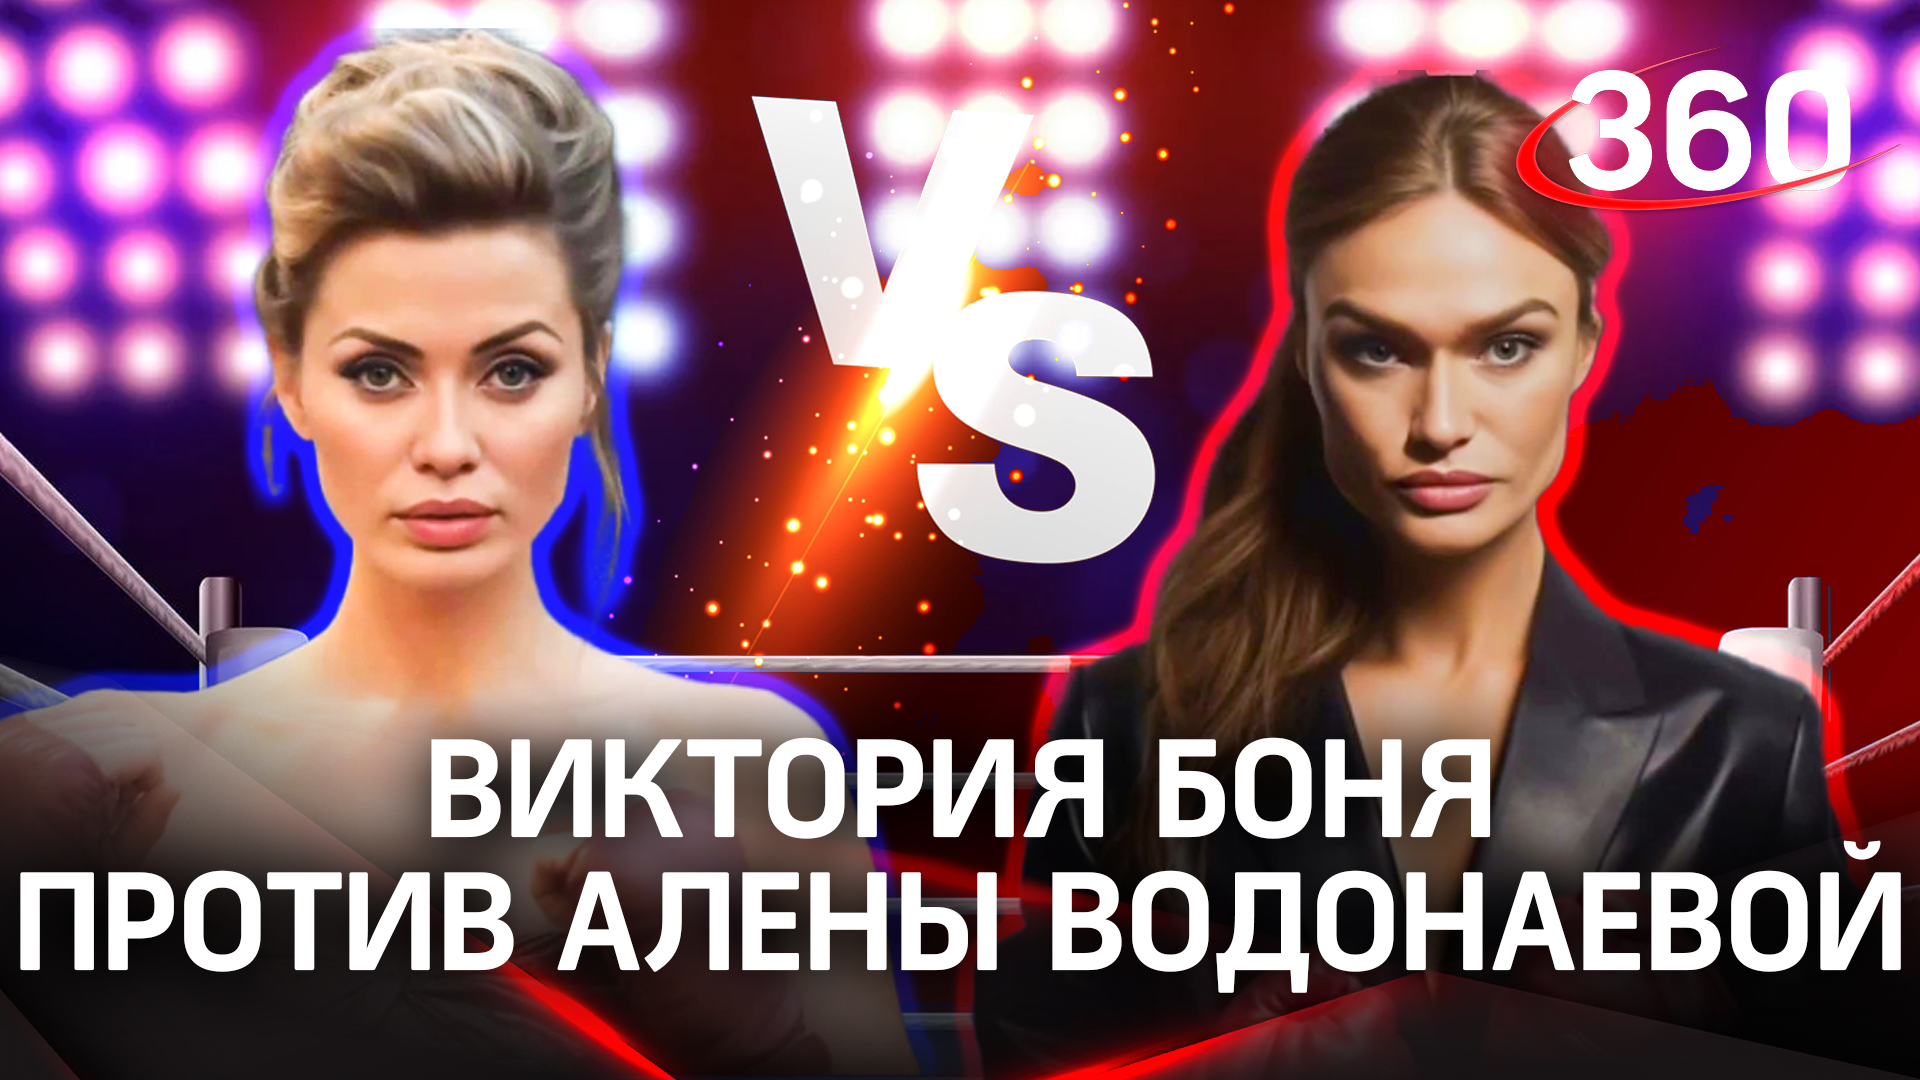 Виктория Боня VS Алена Водонаева: кто круче?